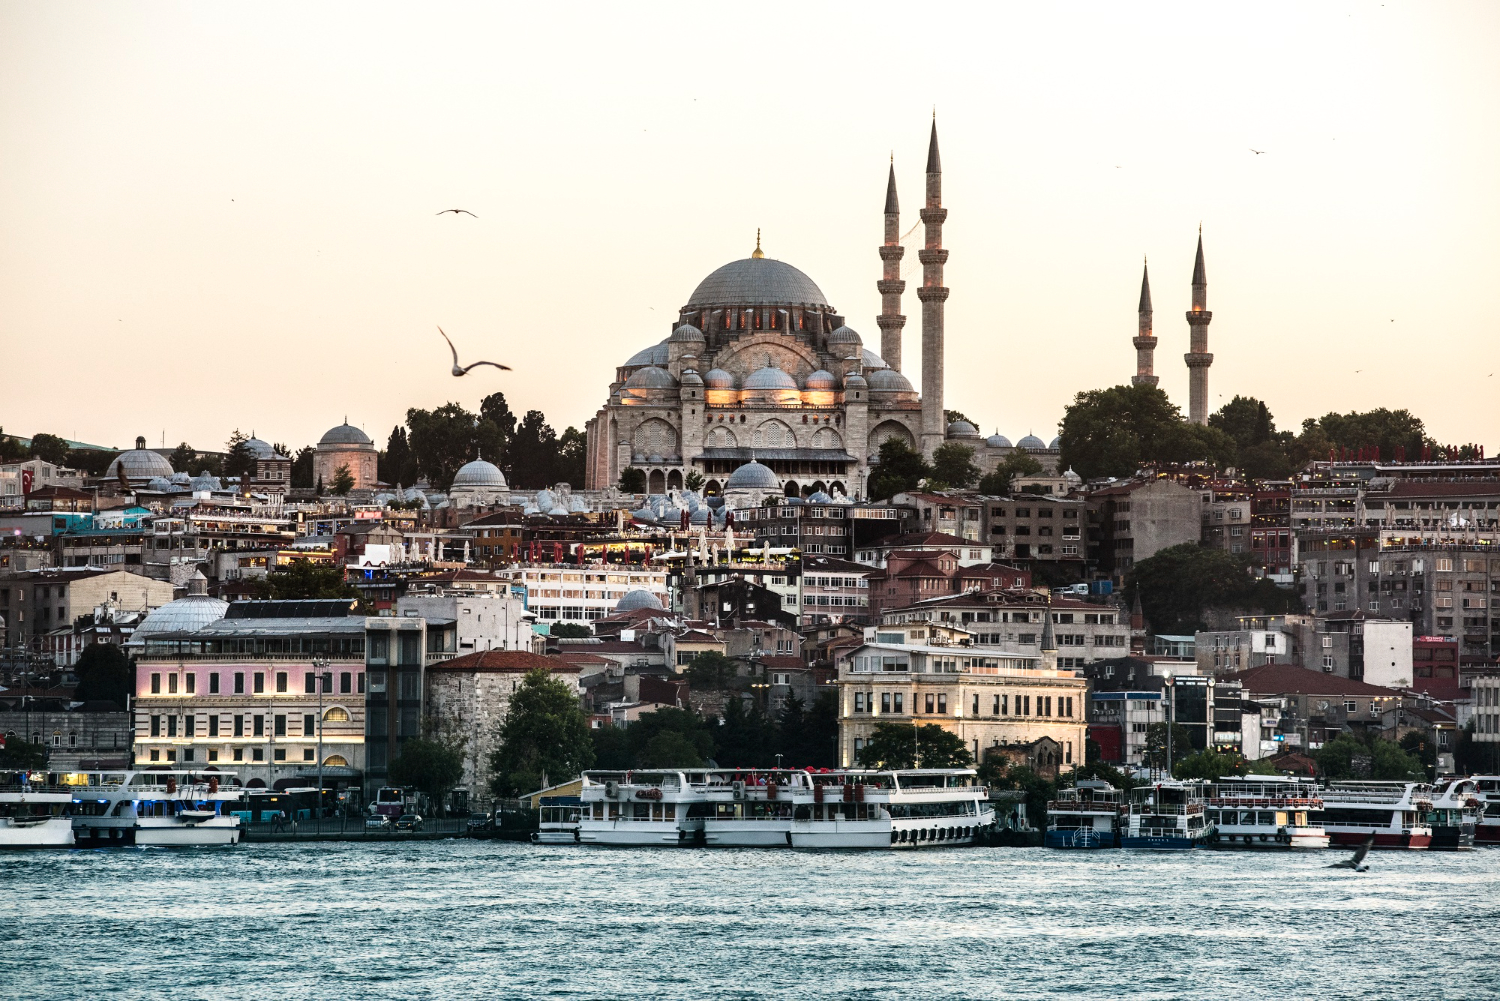 МТС Банк реализовал сервис пополнения карт банков Турции с кешбэком